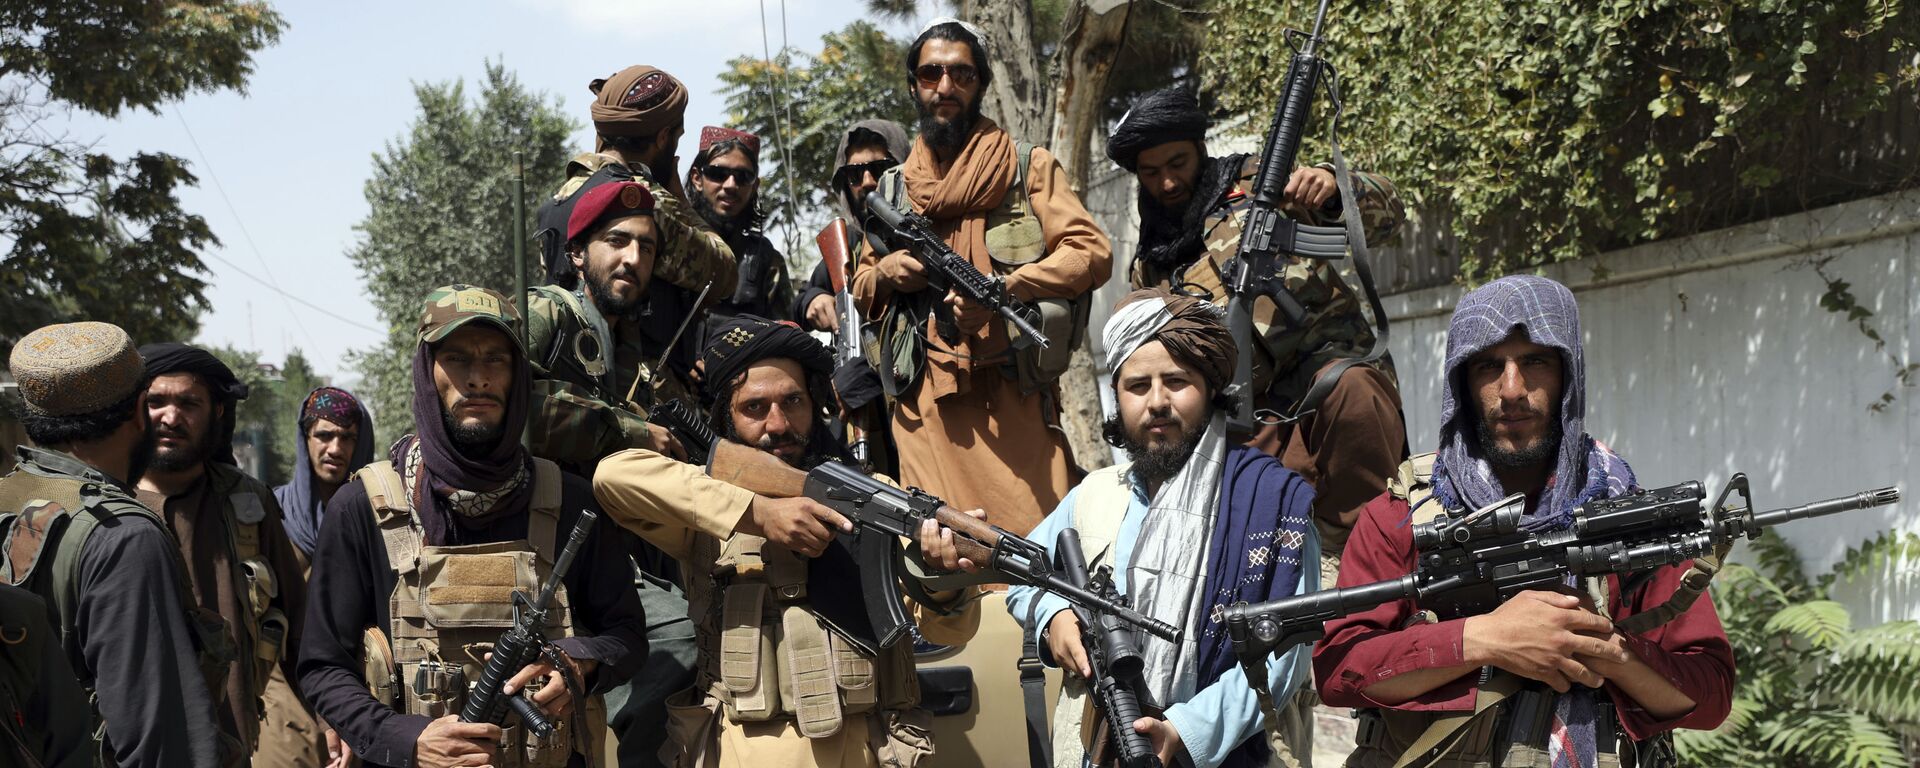 Các chiến binh Taliban chụp ảnh ở Kabul, Afghanistan, Thứ Năm, ngày 19 tháng 8 năm 2021 - Sputnik Việt Nam, 1920, 31.08.2021